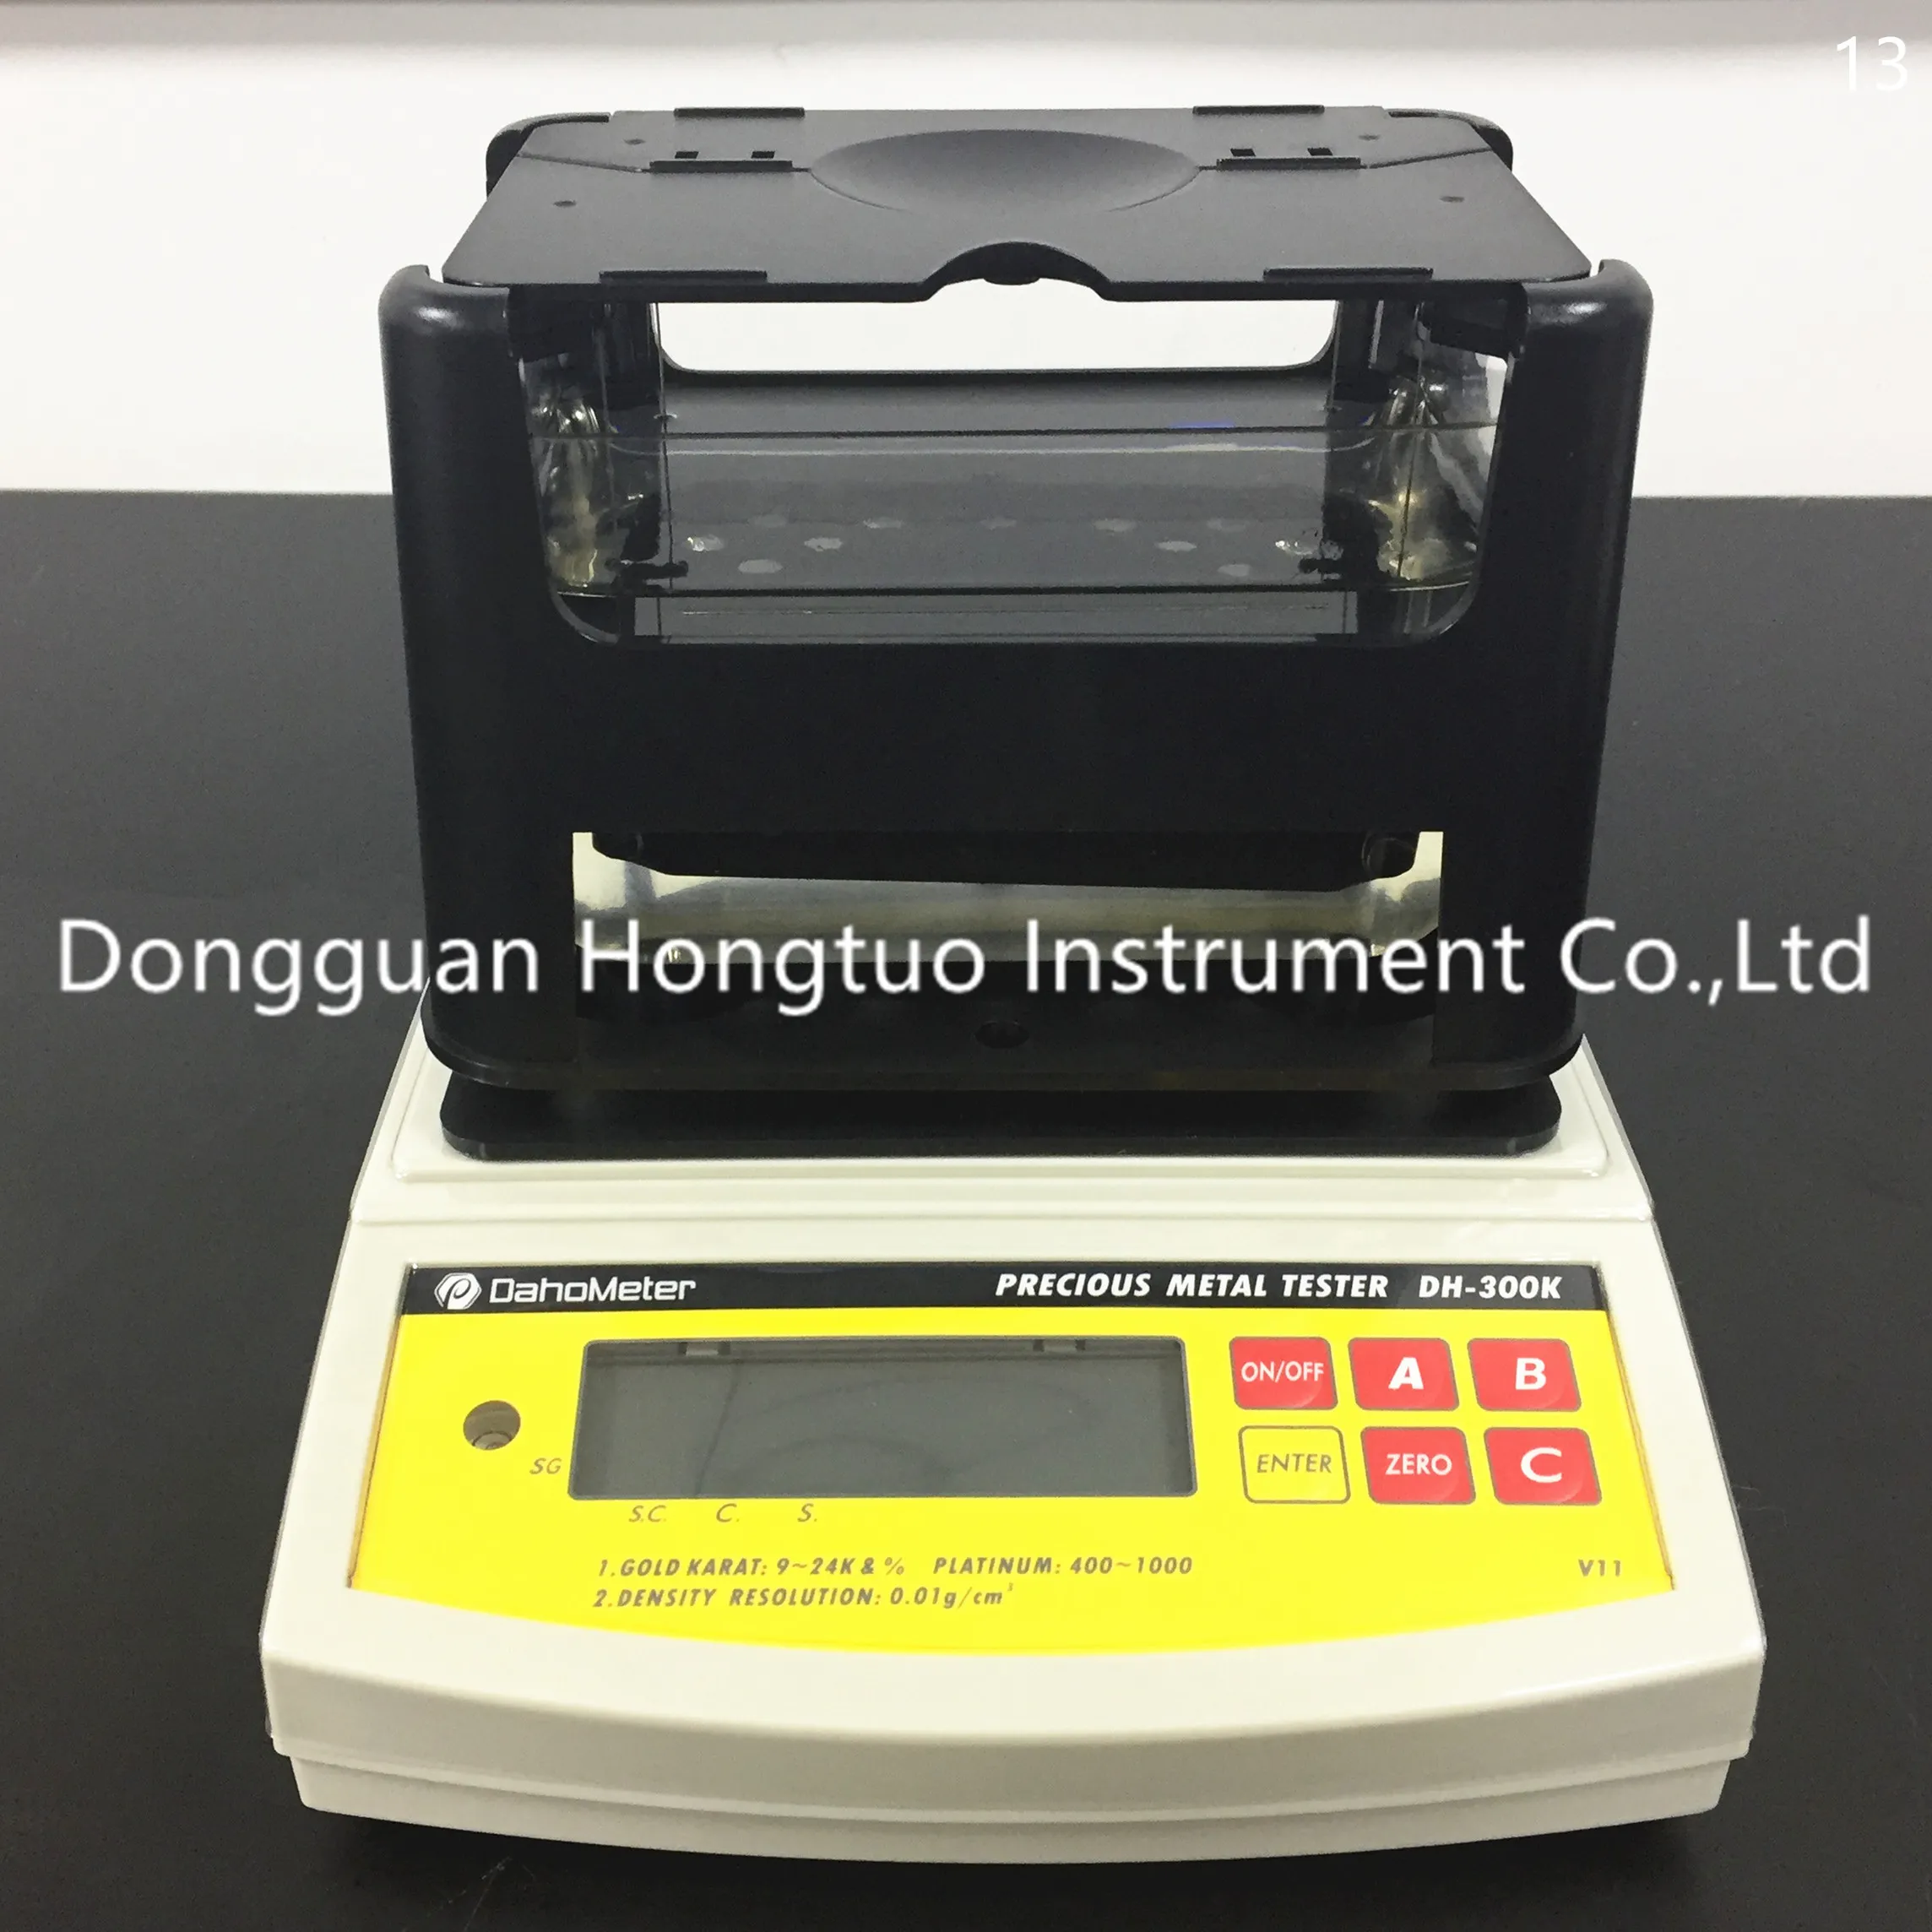 DH-300K Schnellmess-Multifunktions-Golddensitometer/Goldreinheitstester, angeboten von einem professionellen Lieferanten mit bester Qualität